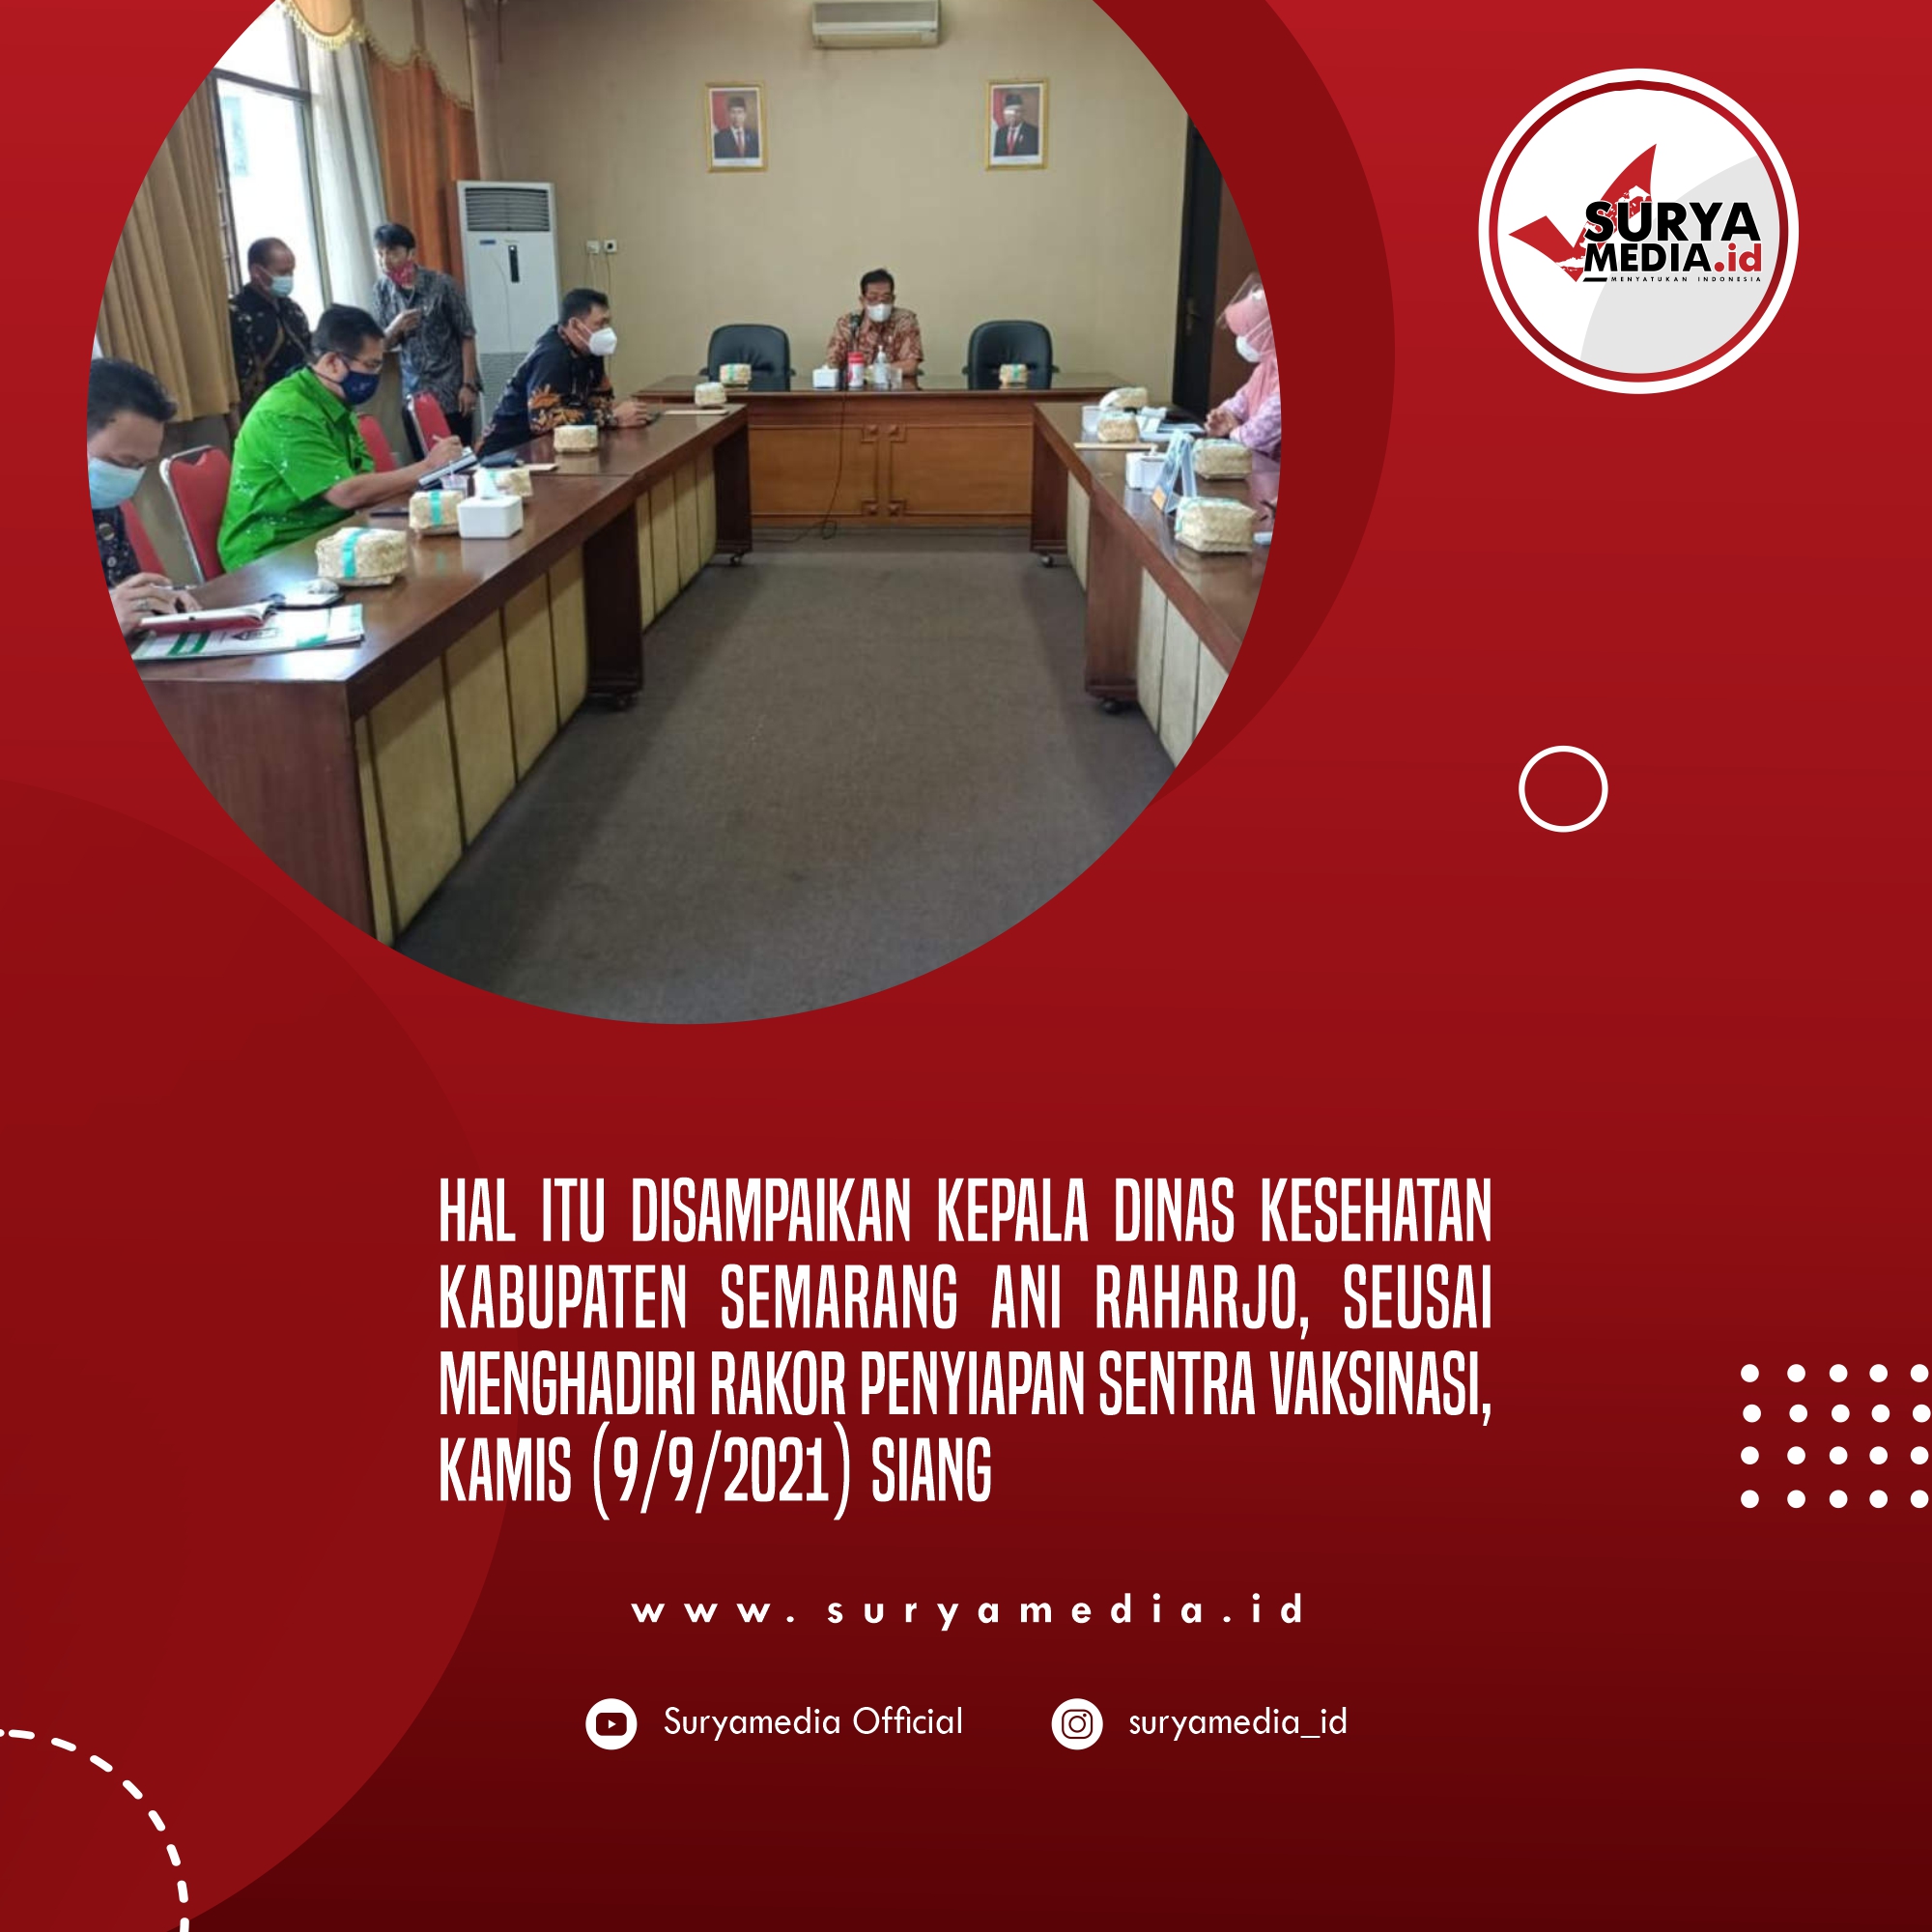 33.330 Dosis Vaksin Disiapkan Untuk Pelajar di Kabupaten Semarang